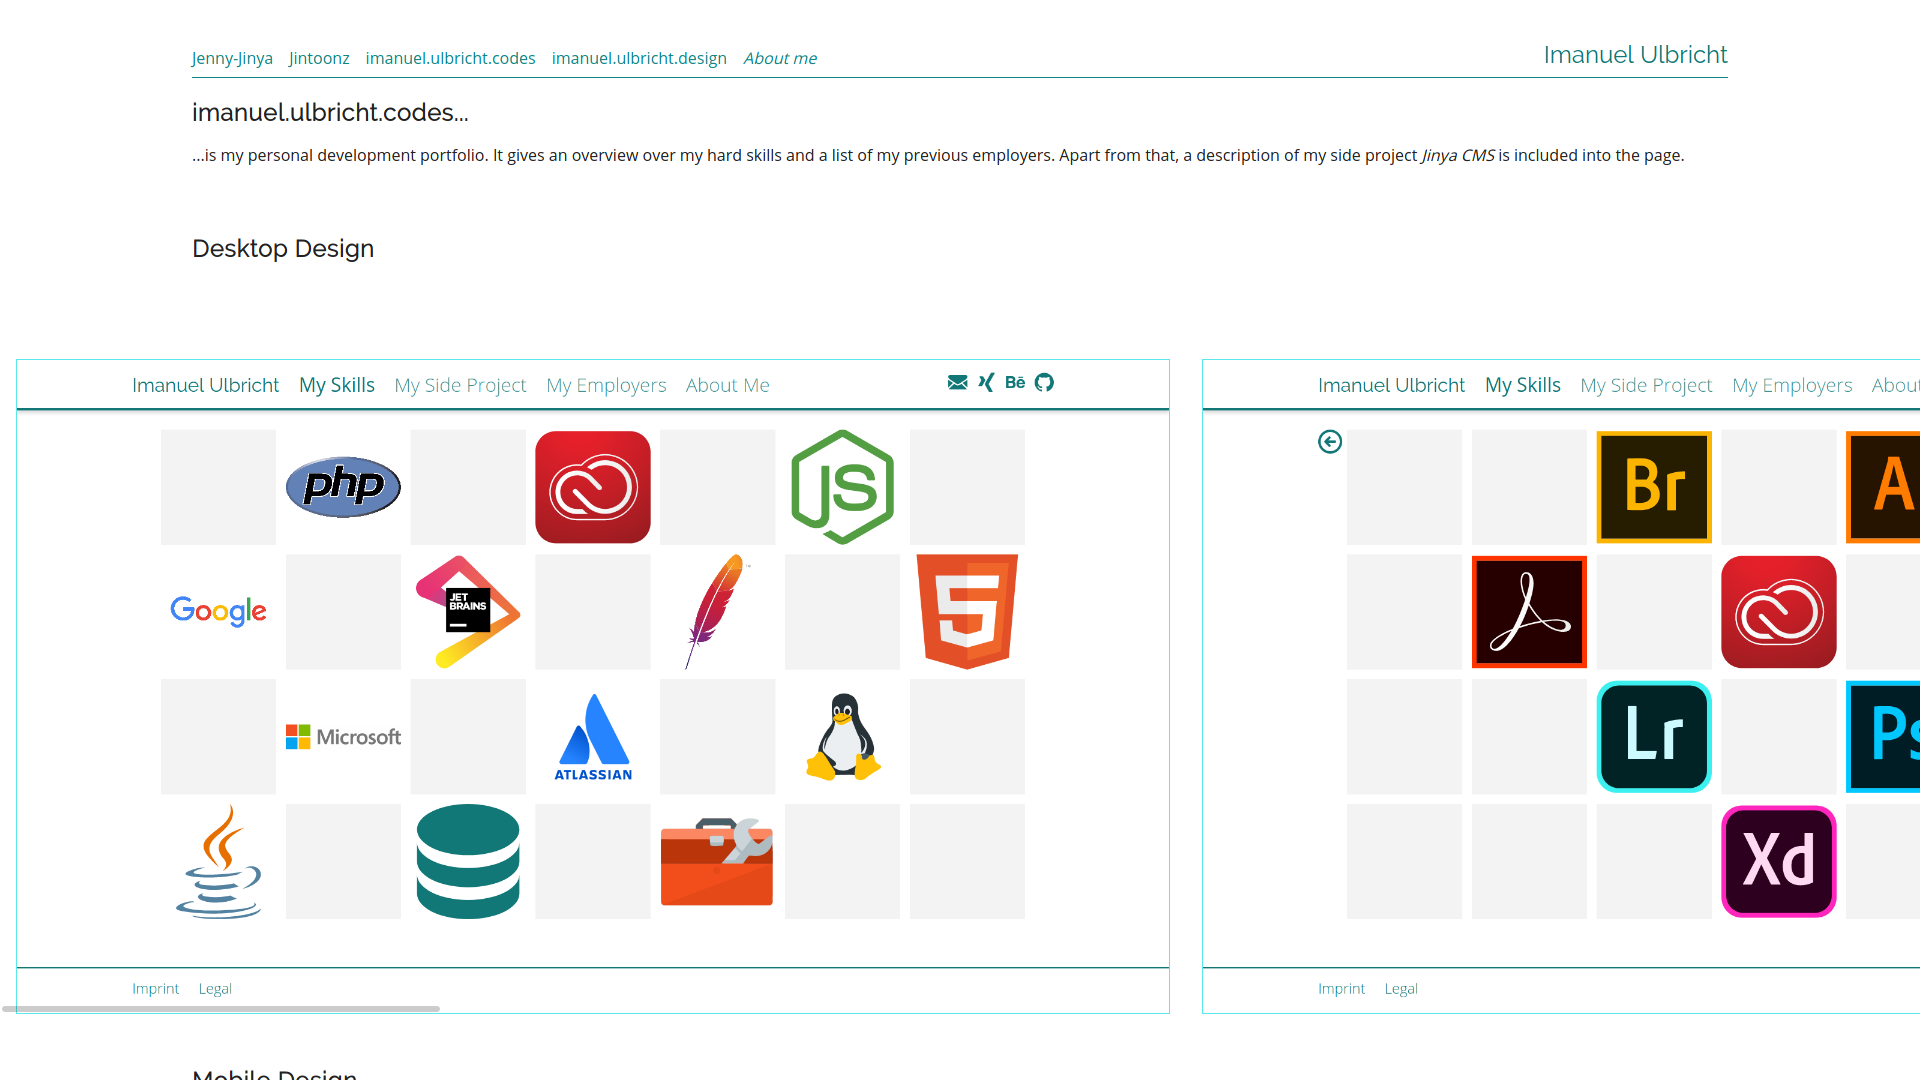 imanuel.ulbricht.design Desktop – Sample Page